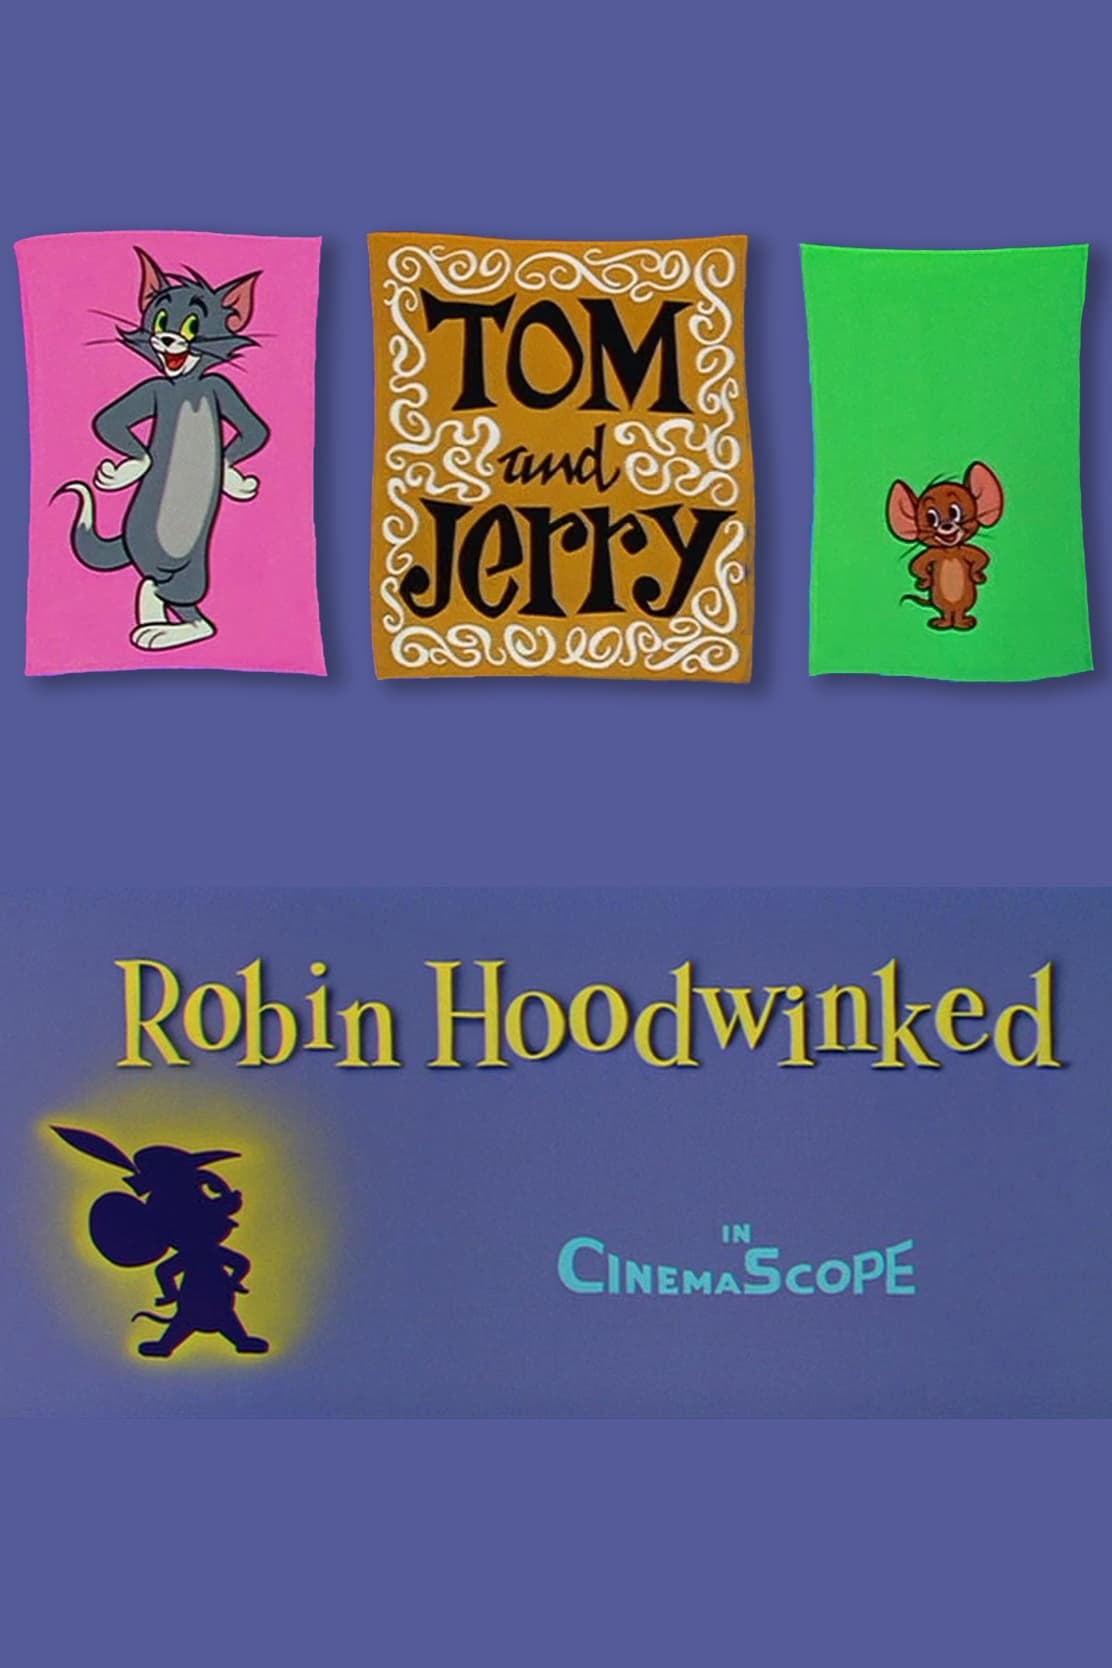 Robin Hoodwinked (1958)